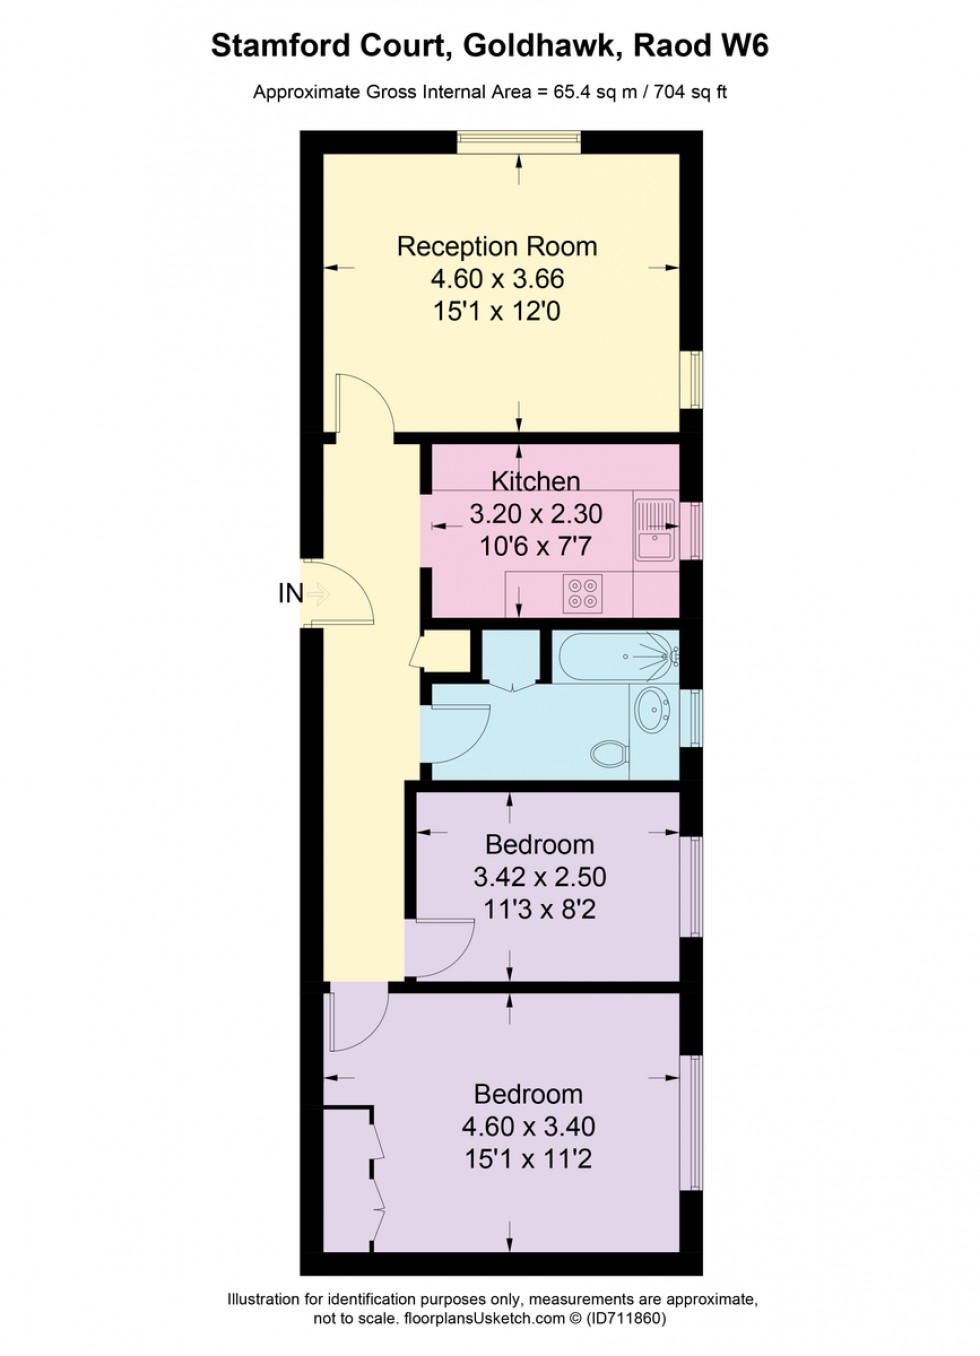 Floorplan for Stamford Court, W6